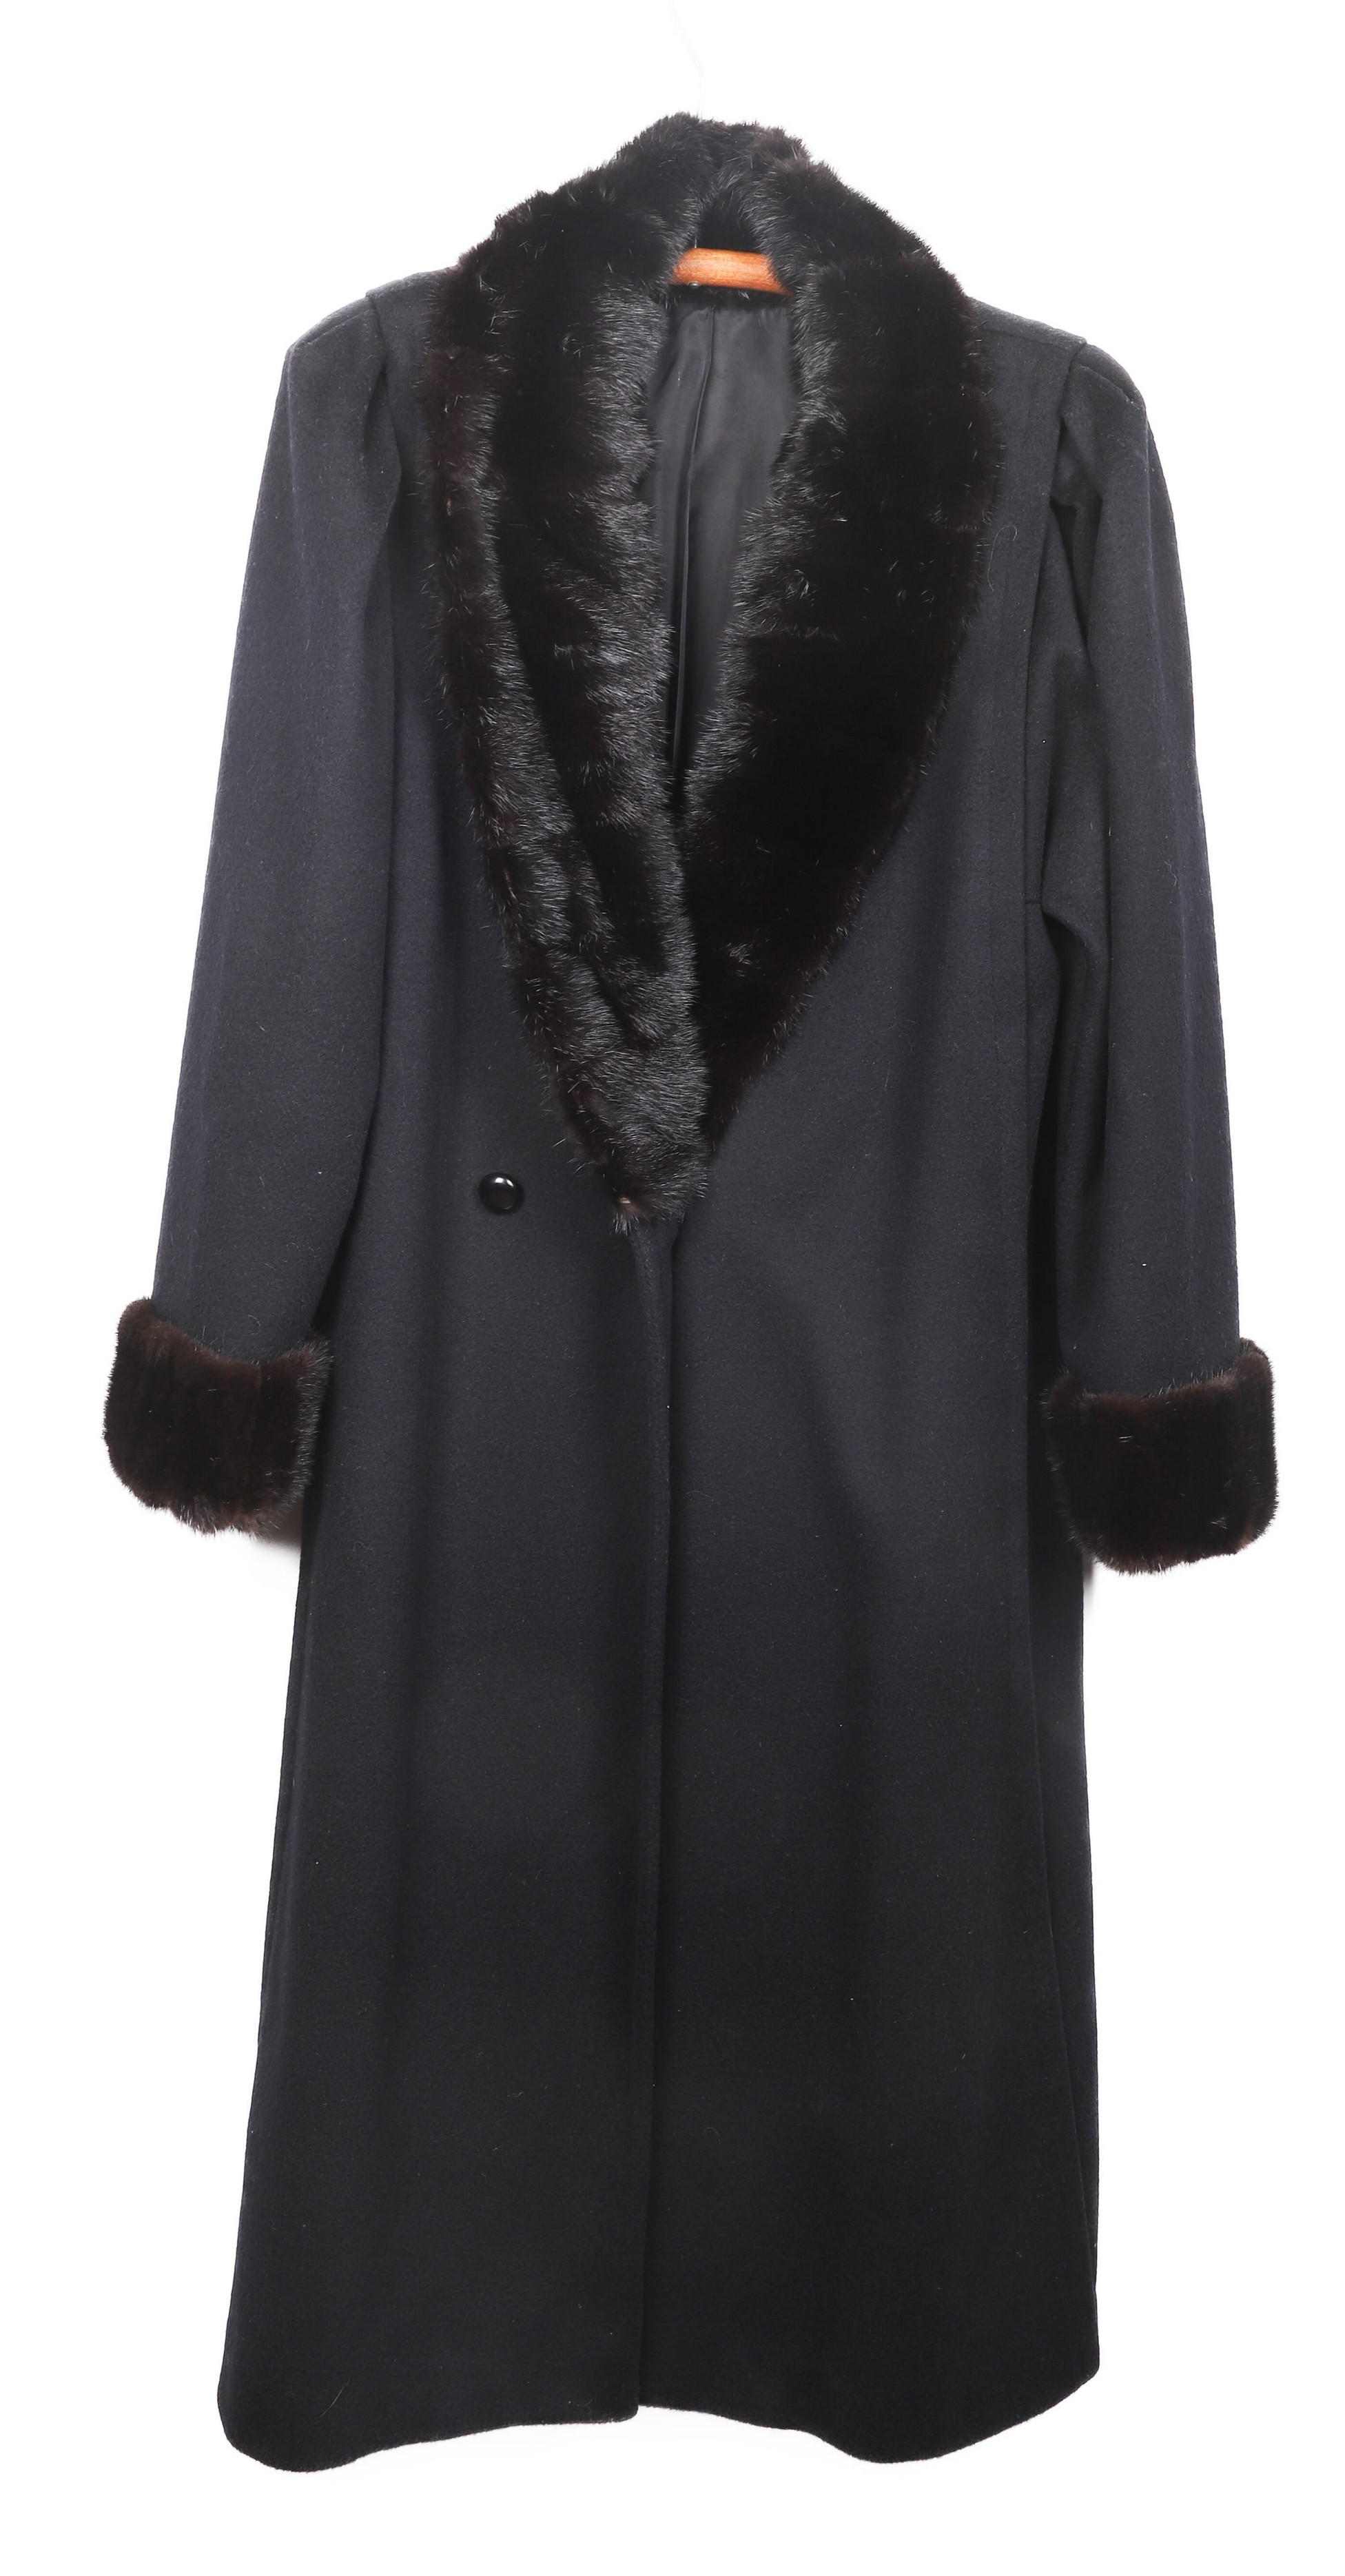 Vintage black ladies coat with